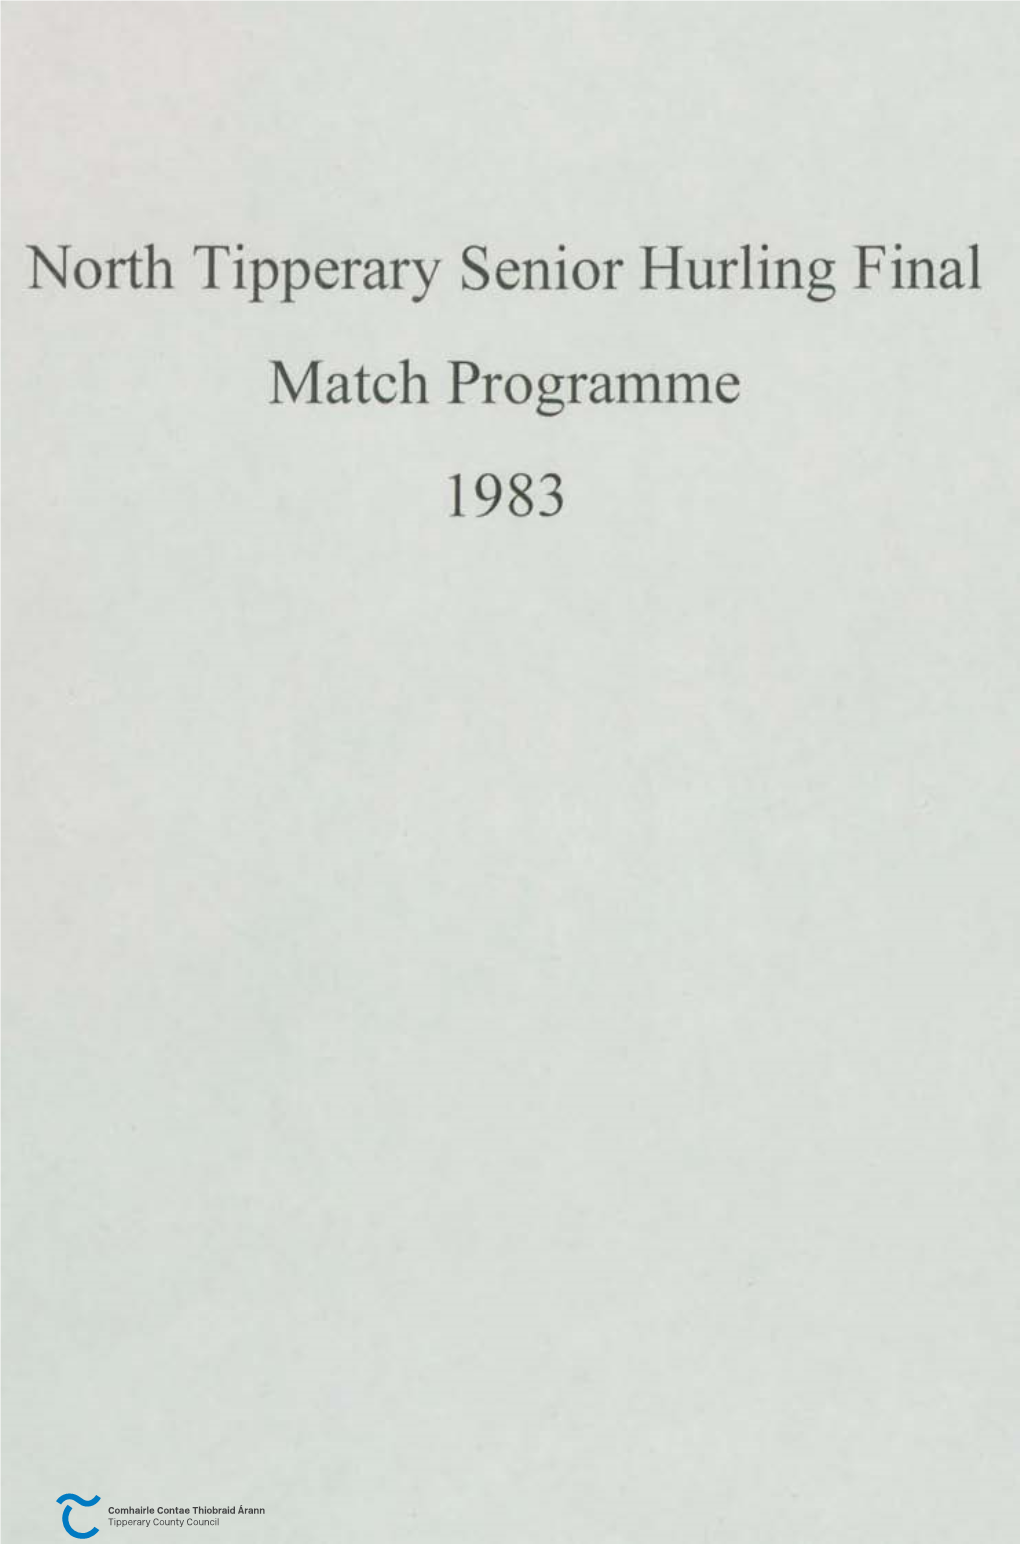 North Tipperary Senior Hurling Final Match Programme 1983 Coiste TIOBRAD ARANN THUAIDH